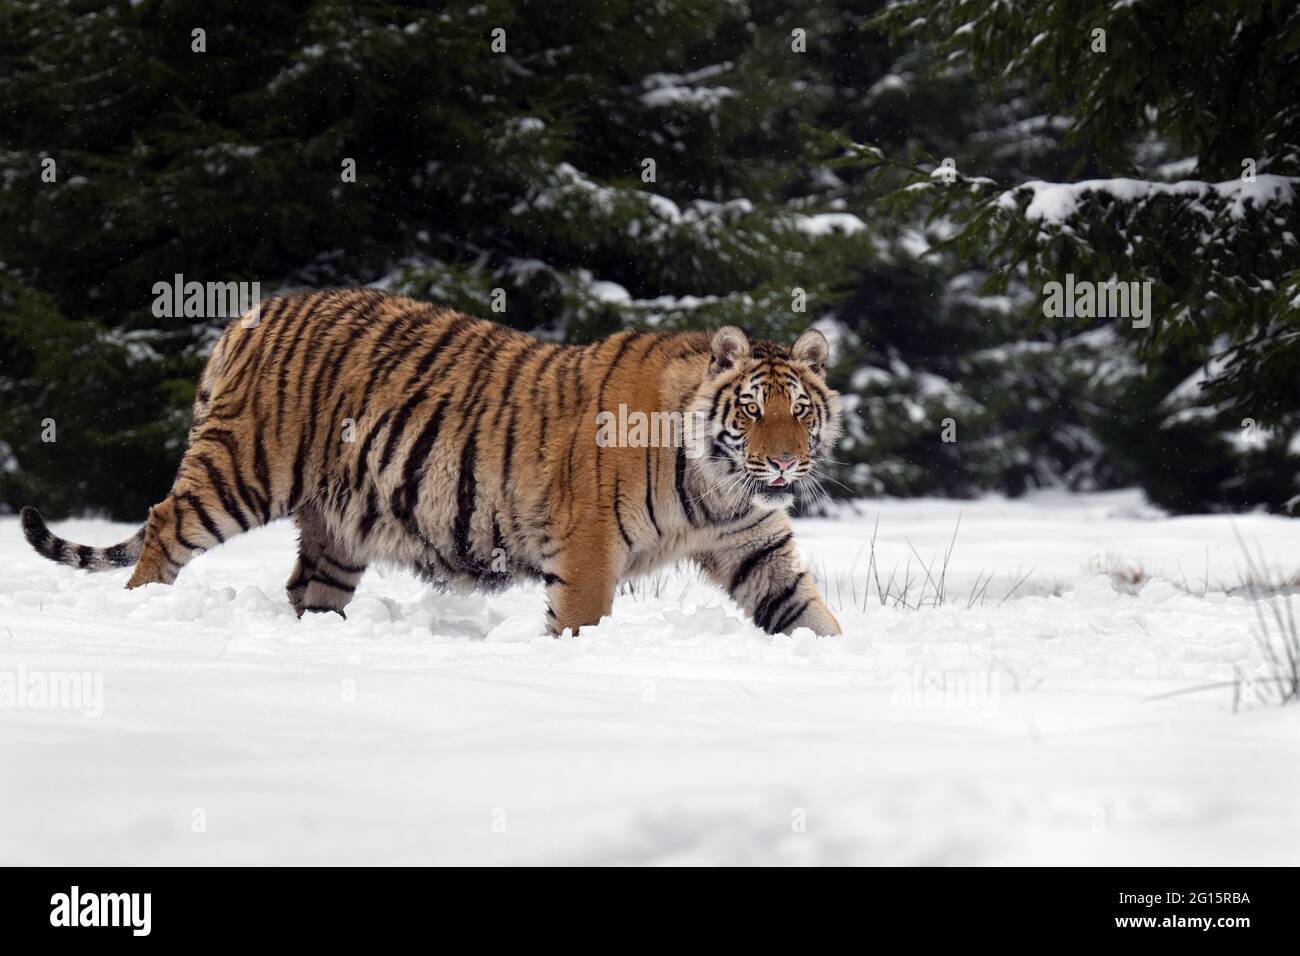 Le tigre d'Ussuri marche dans la neige au bord de la forêt. Banque D'Images